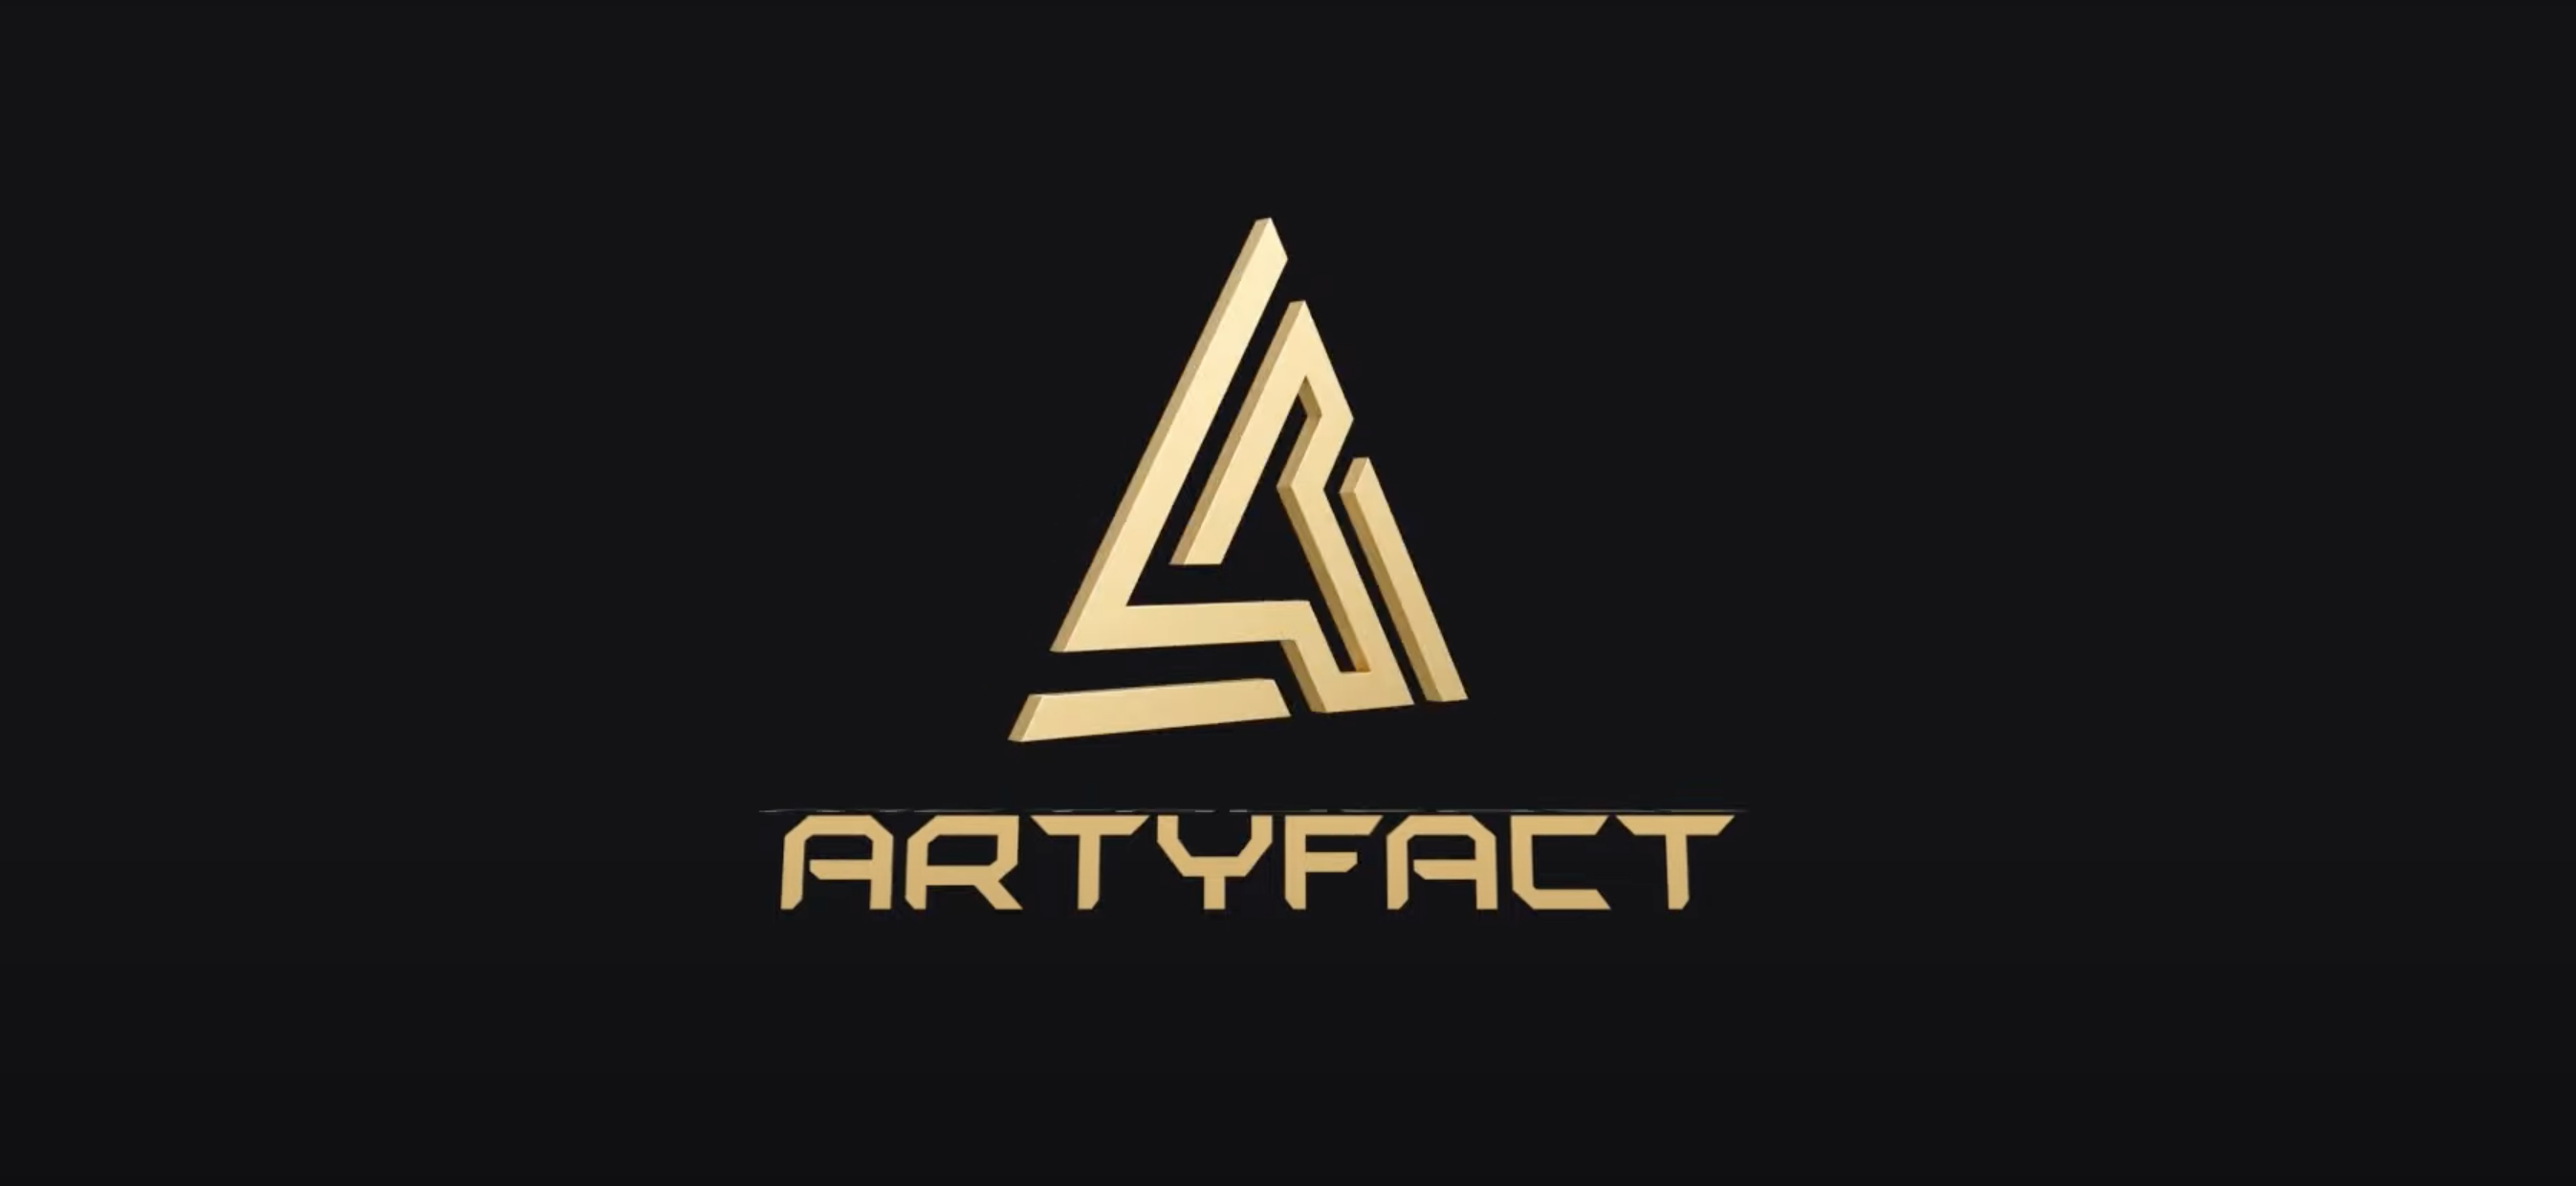 Artyfact